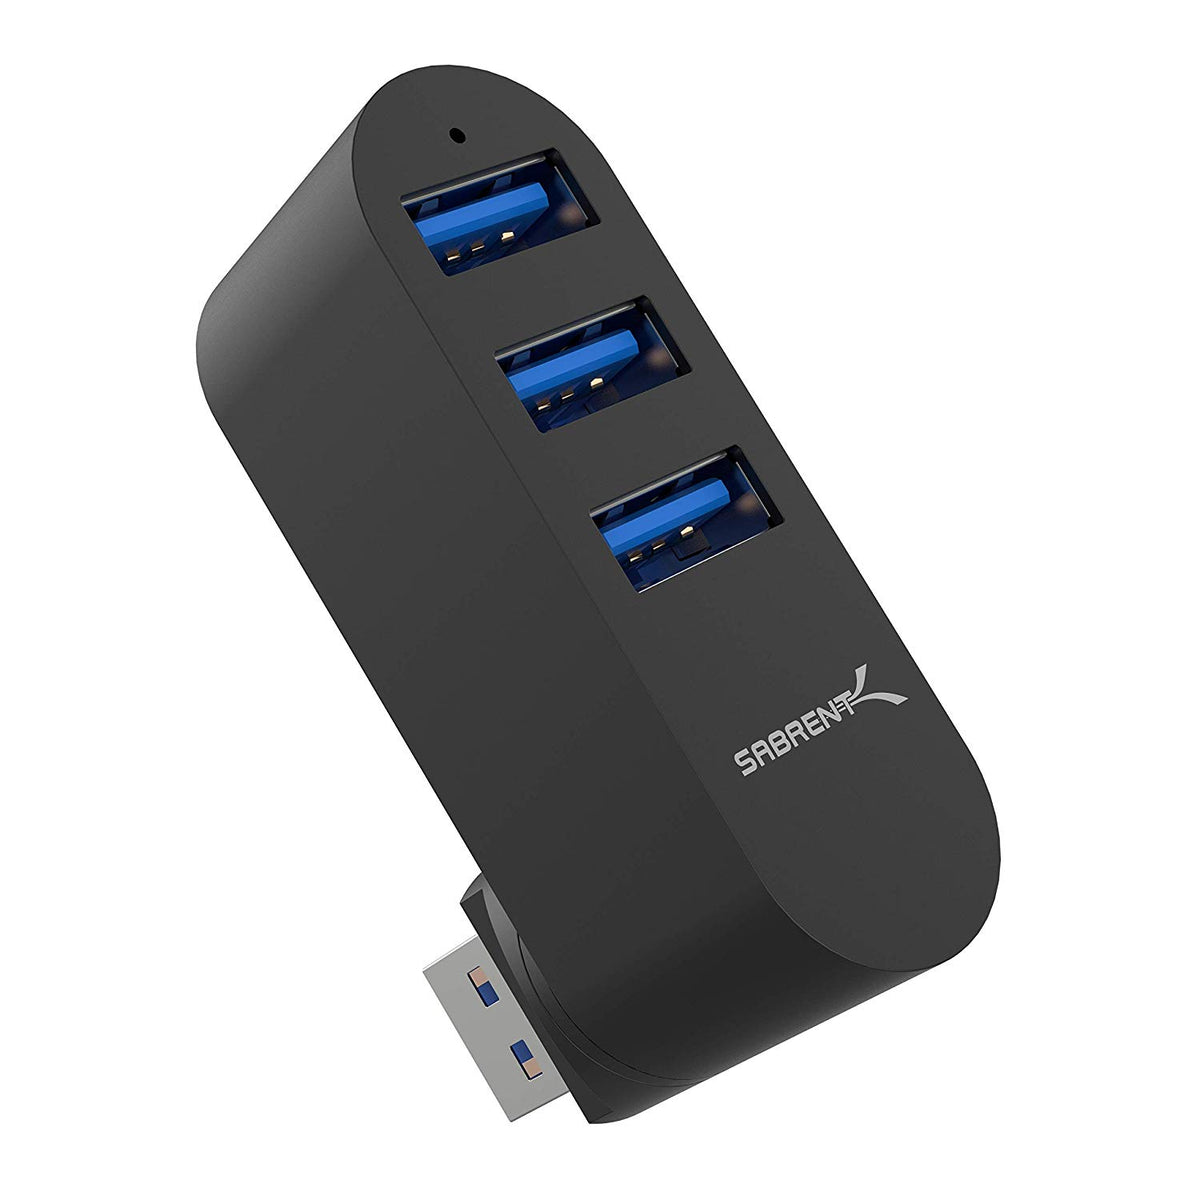 Sabrent 3-Port USB 3.0 Hub with Card Reader